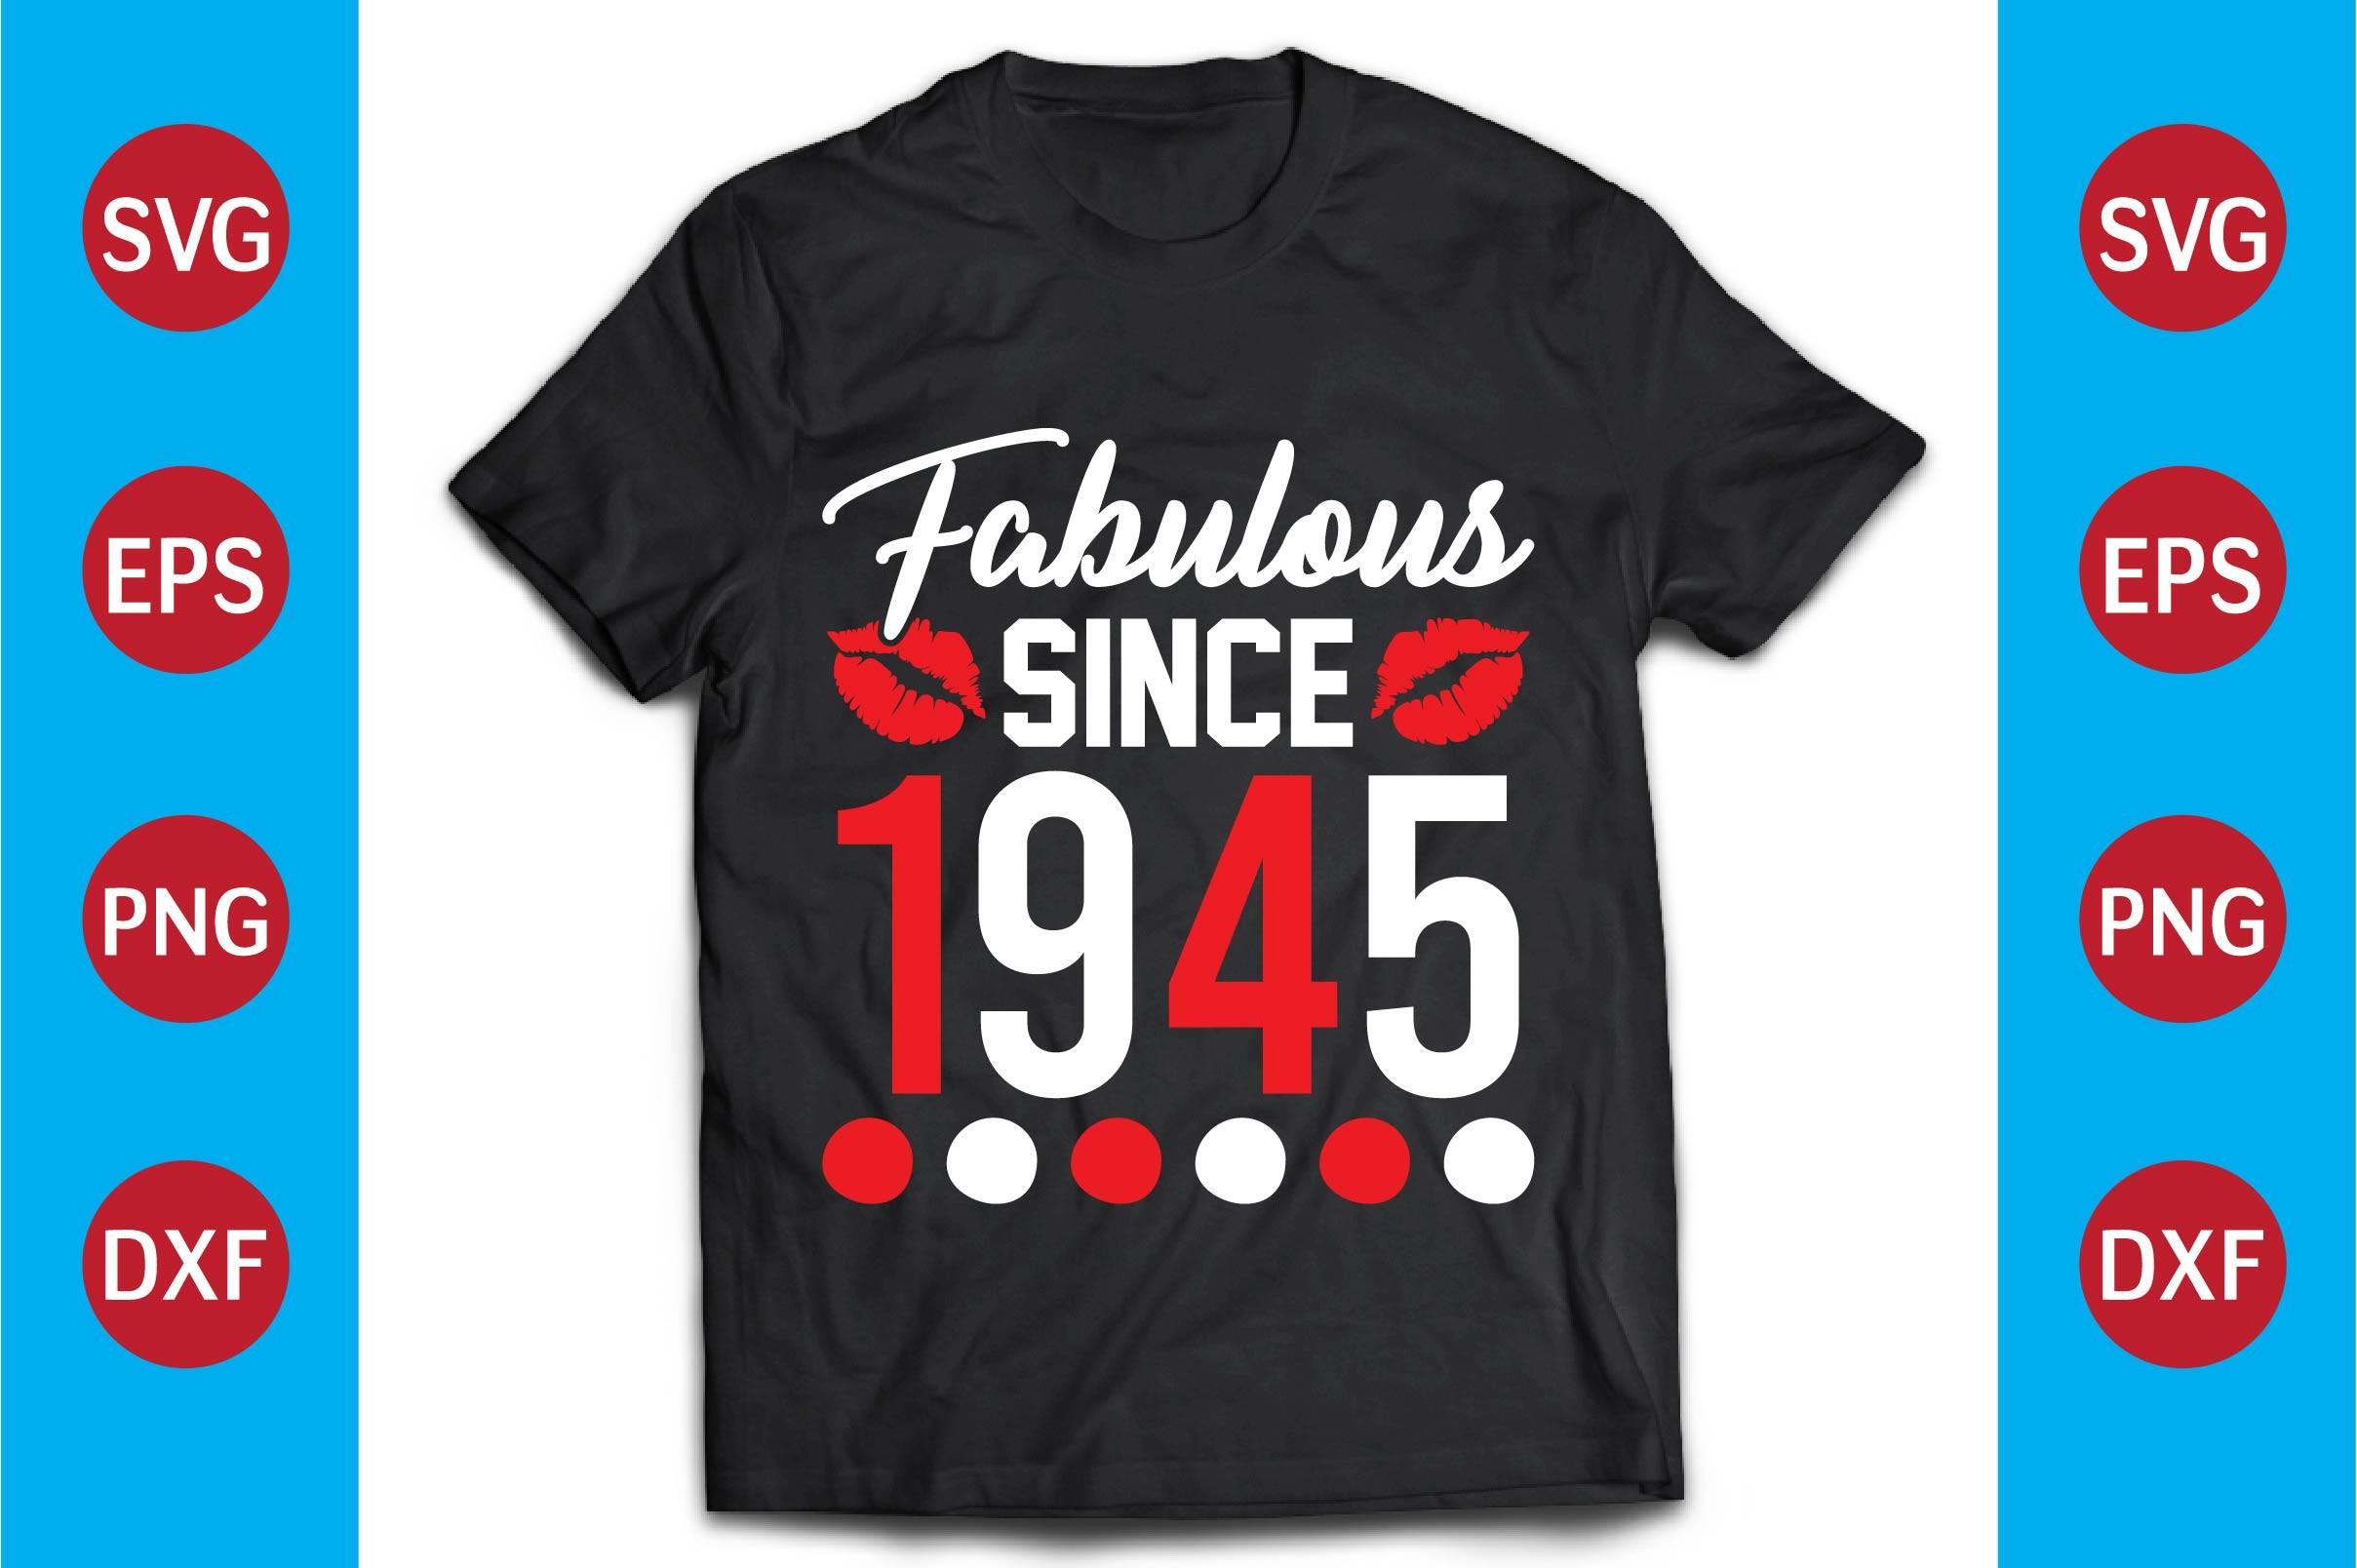 Fabulous T-shirt Design,fabulous Since